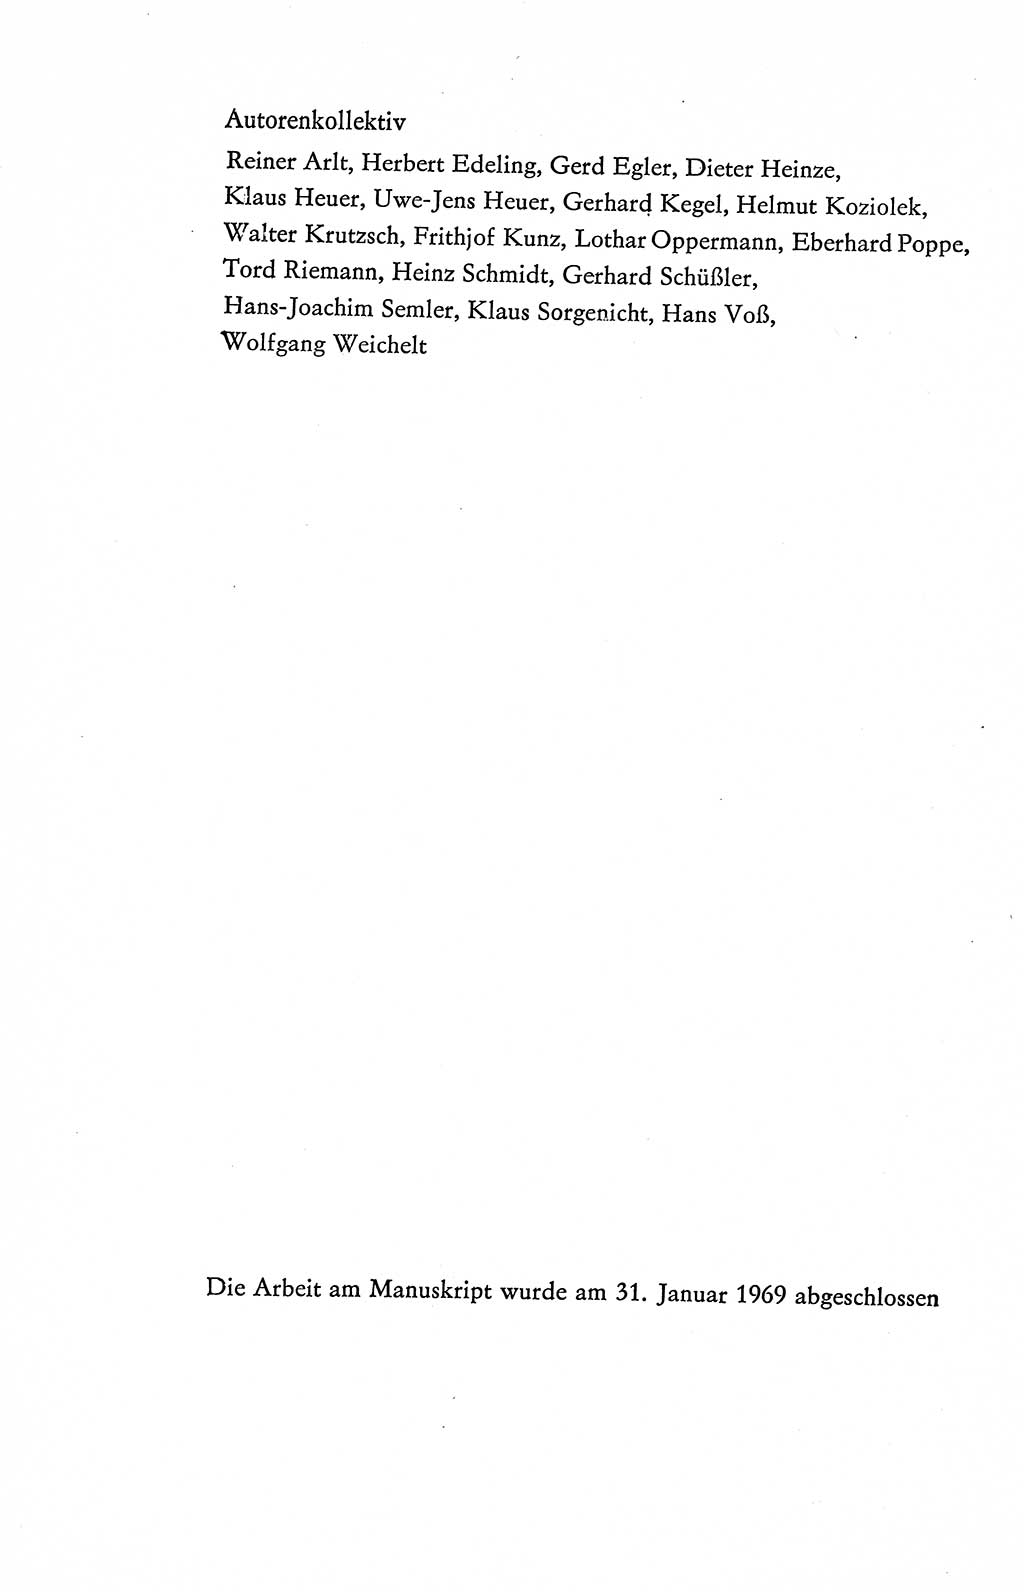 Verfassung der Deutschen Demokratischen Republik (DDR), Dokumente, Kommentar 1969, Band 2, Seite 6 (Verf. DDR Dok. Komm. 1969, Bd. 2, S. 6)